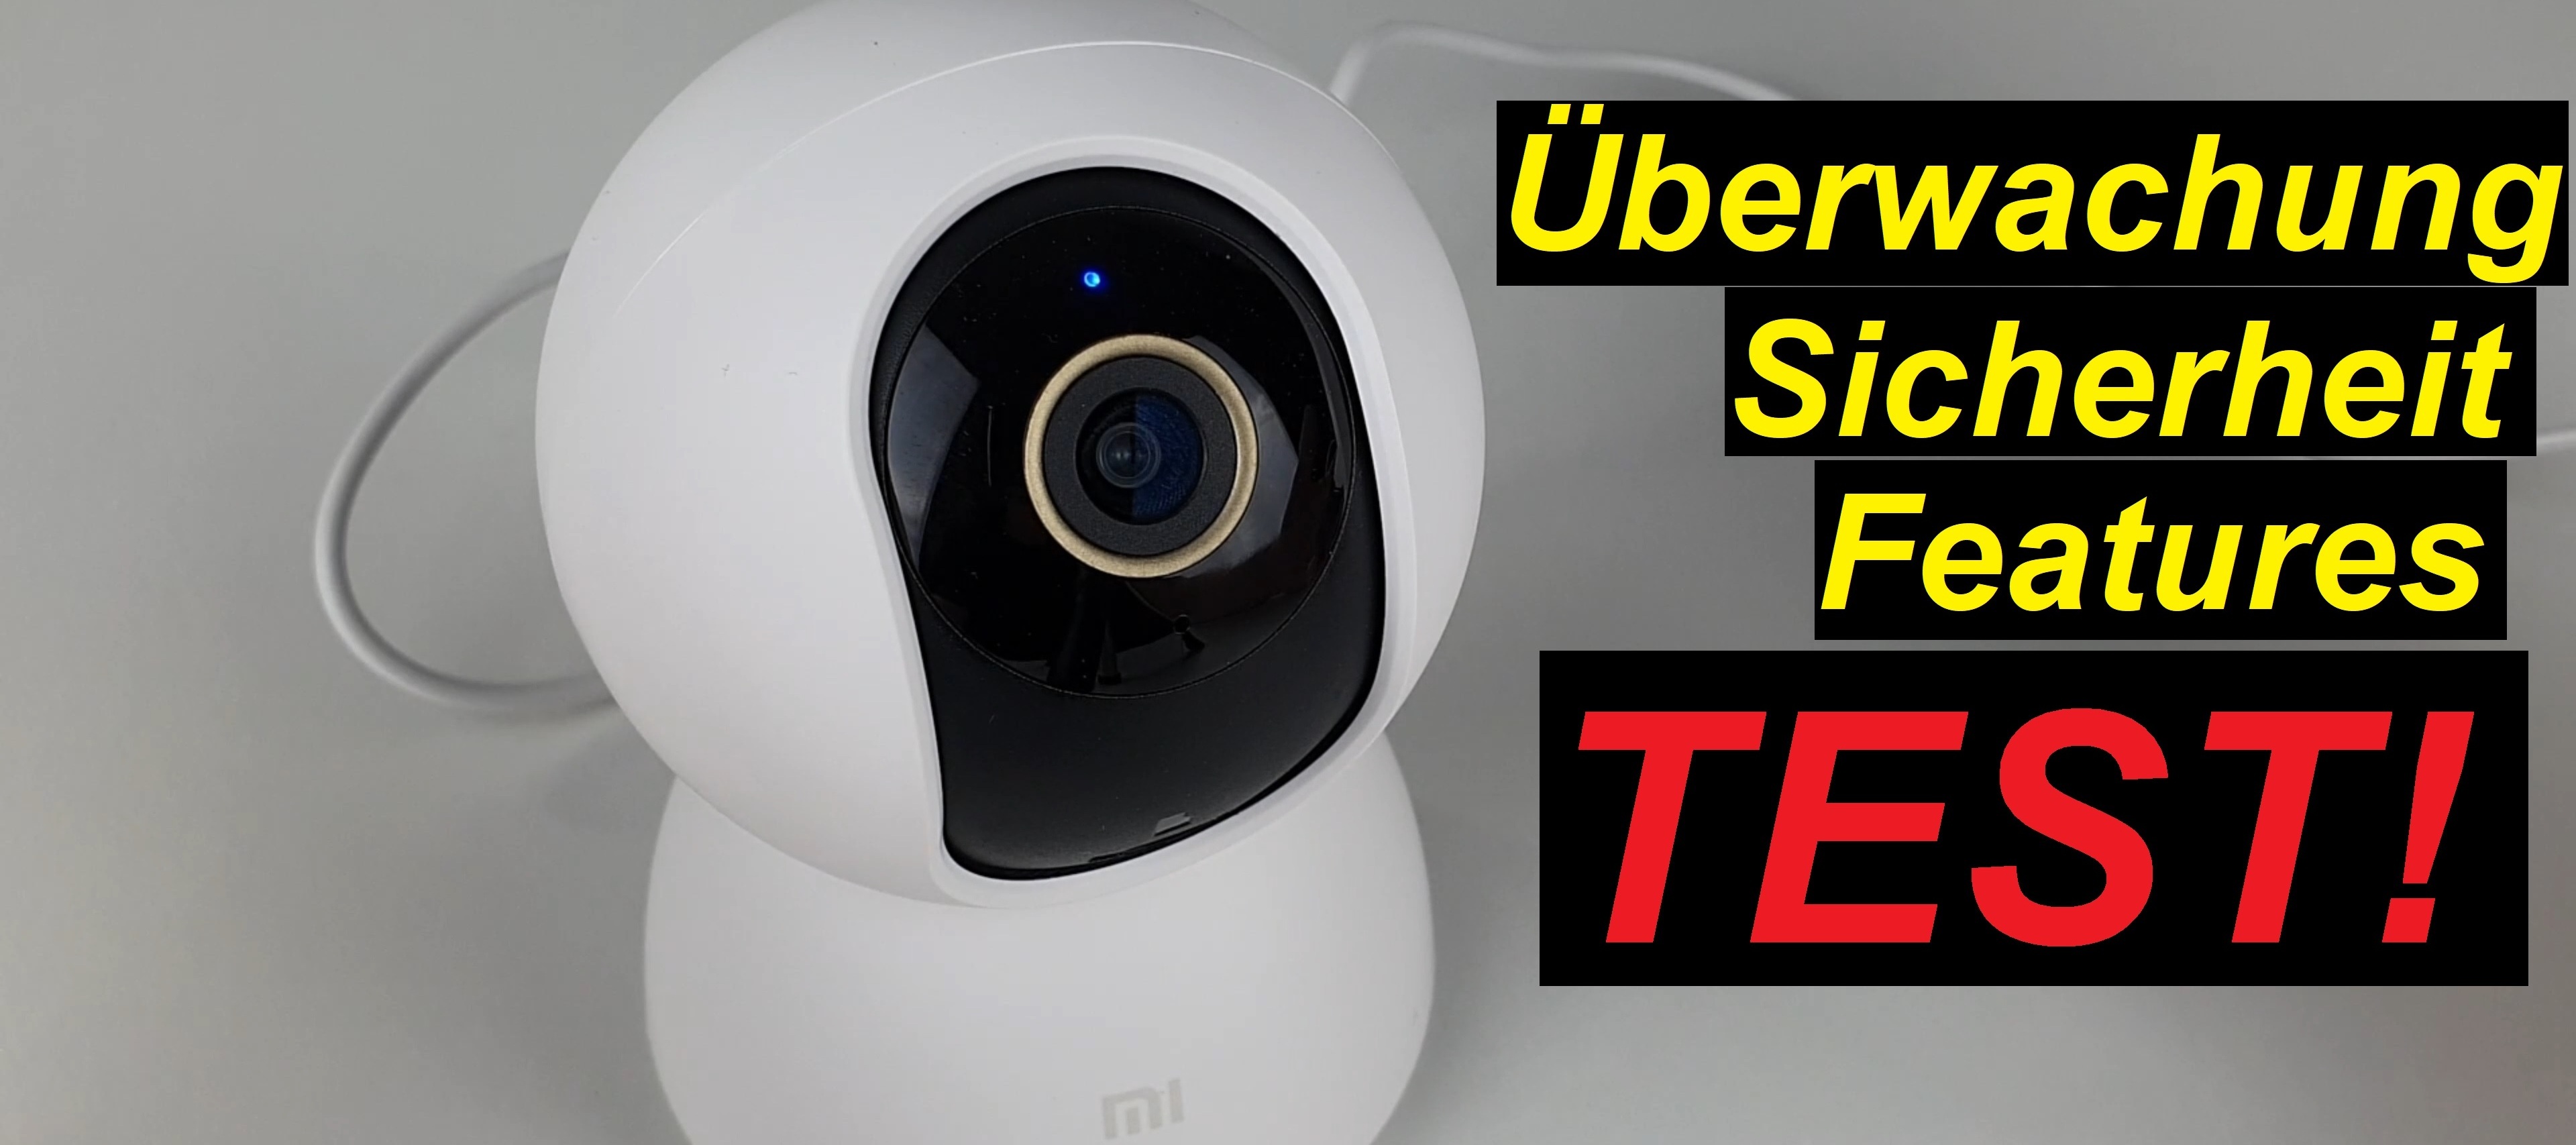 Test! Xiaomi Mi 360° Home Security Camera 2K - Überwachung pur!